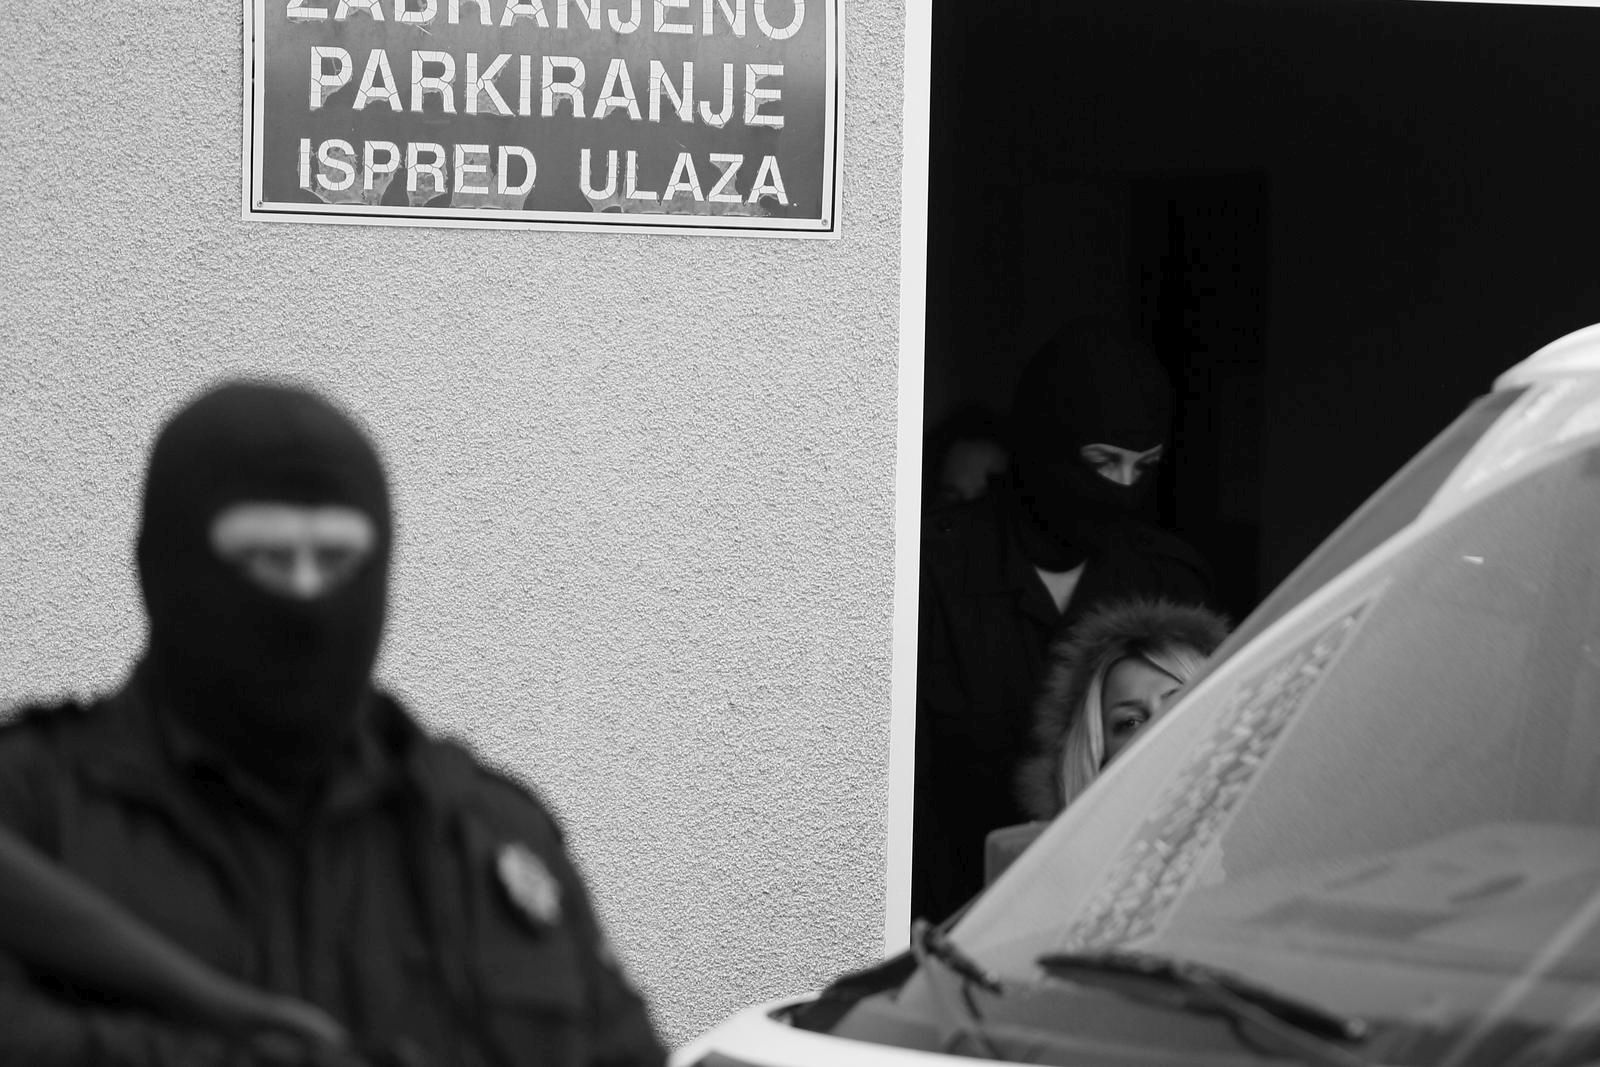 EKSKLUZIVNO 30.10.2019., Mostar, BIH -  Sunita Hindic-Bosnjakovic u pratnji policije i dugih cijevi stigla na kontrolu u Kantonalnu bolnicu RMC "Safet Mujic"rPhoto: Denis Kapetanovic/PIXSELL